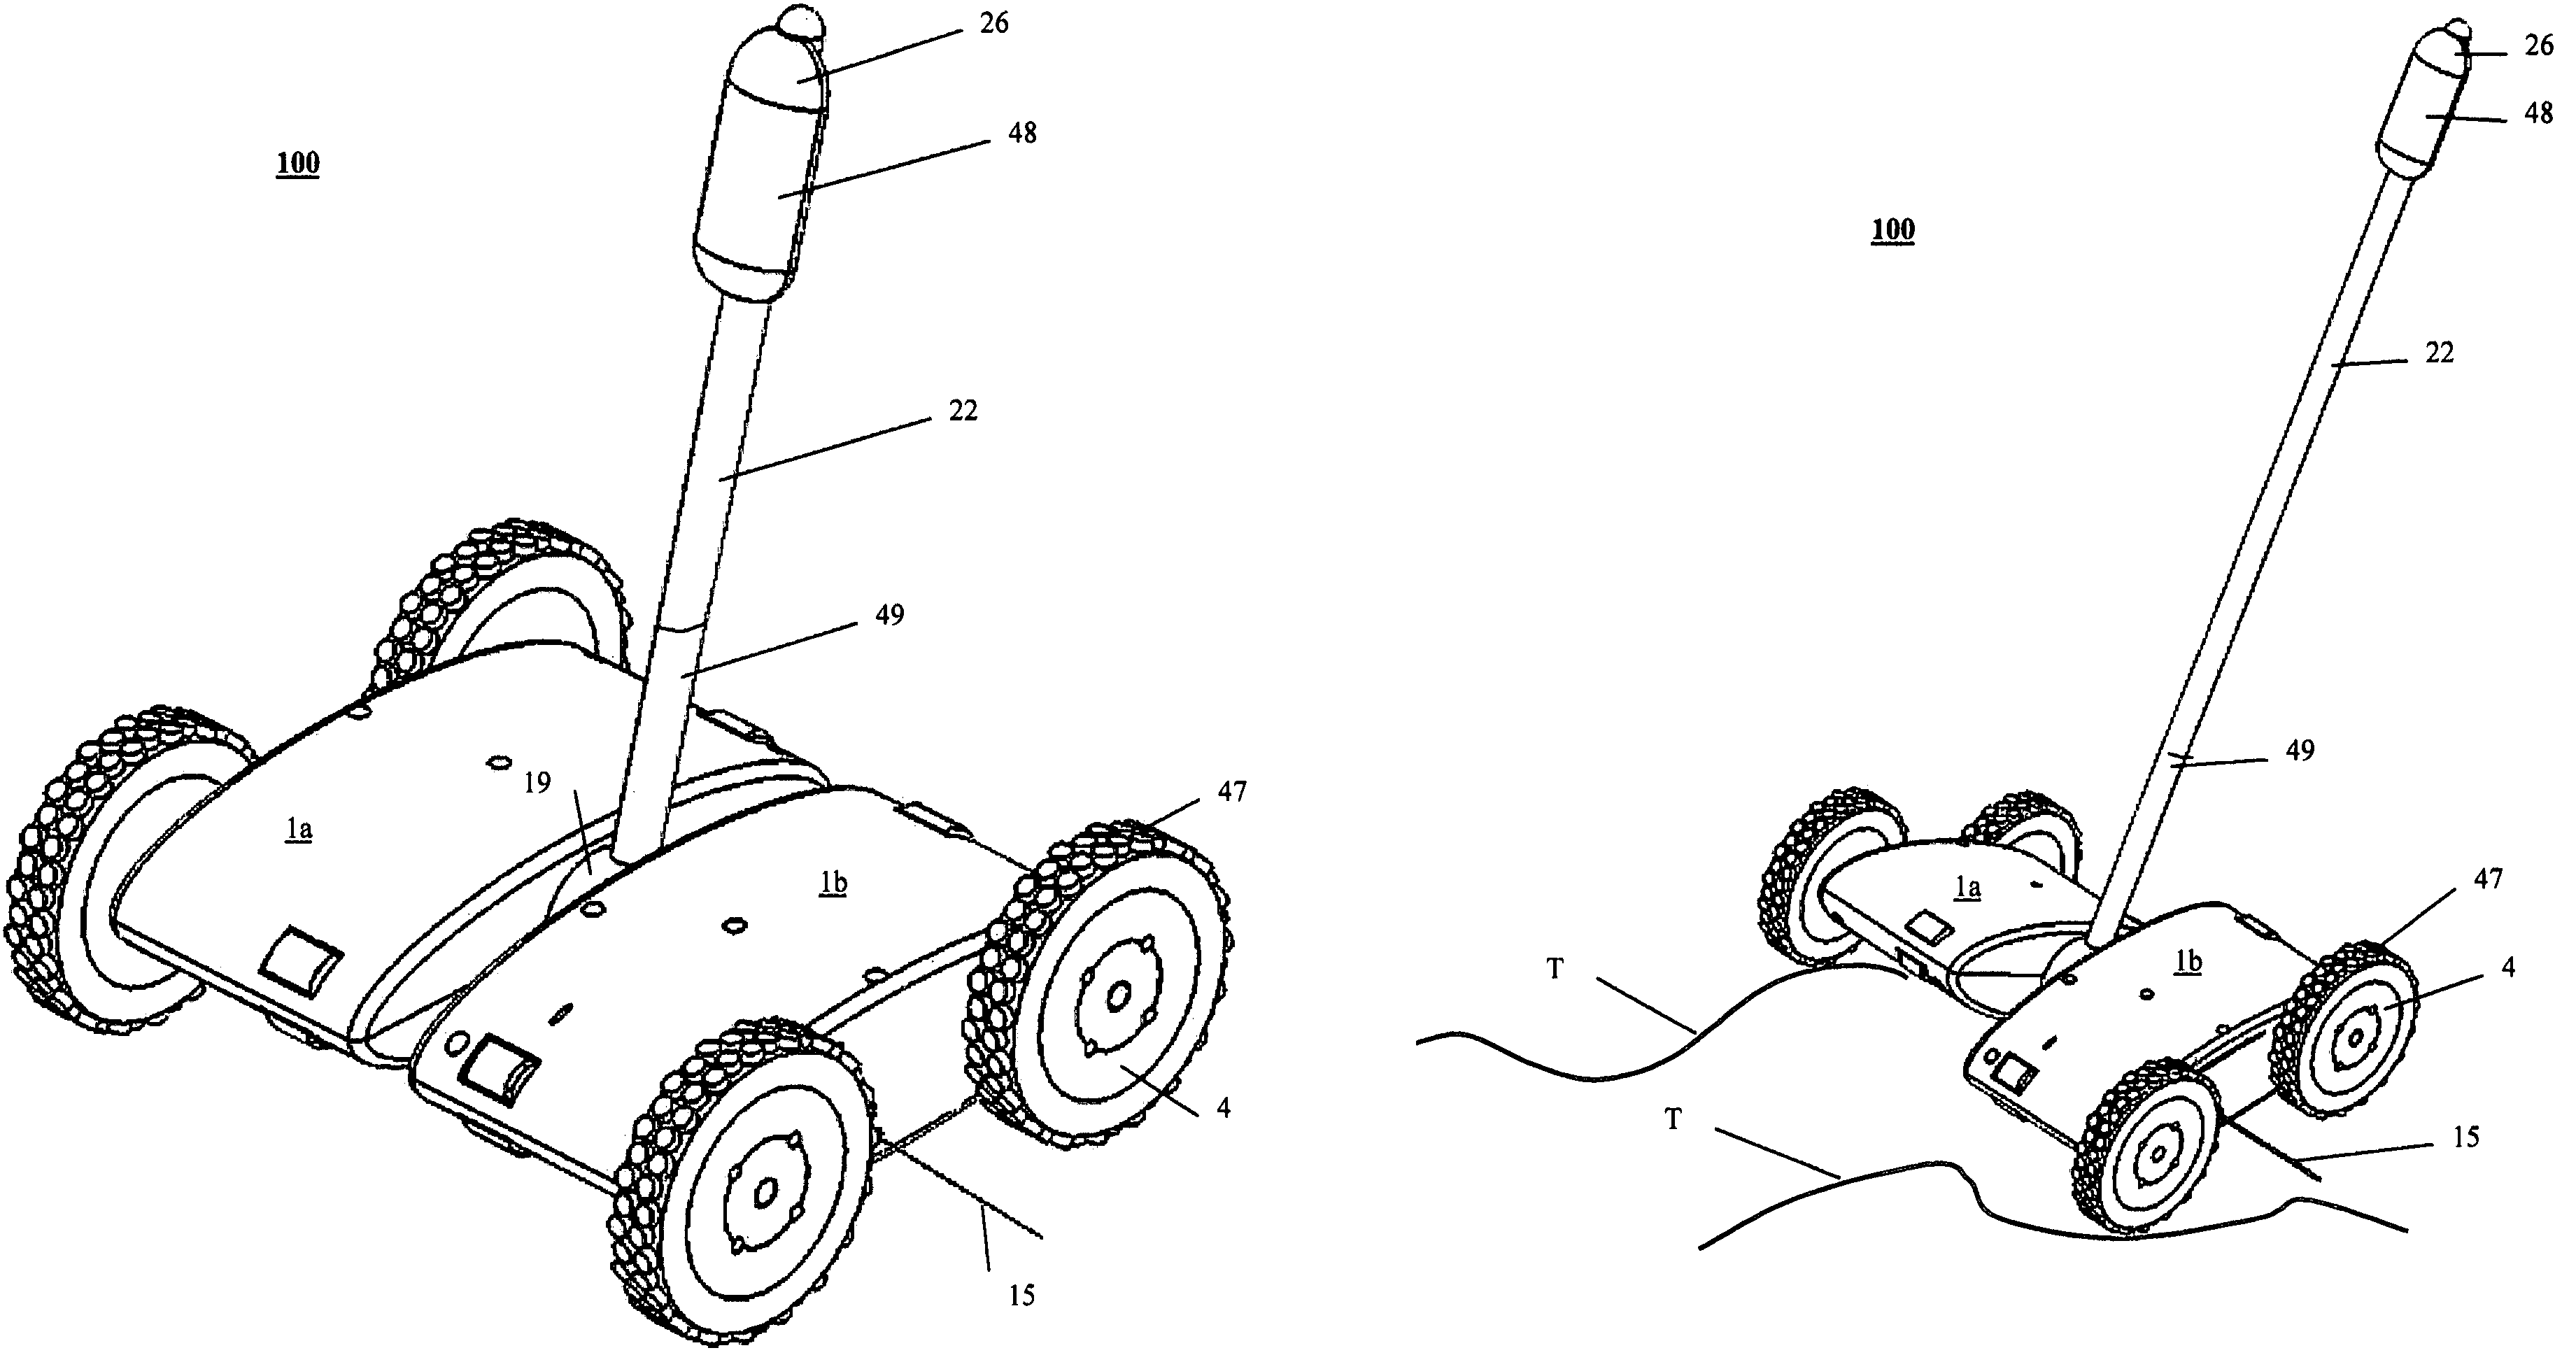 Rugged terrain robot